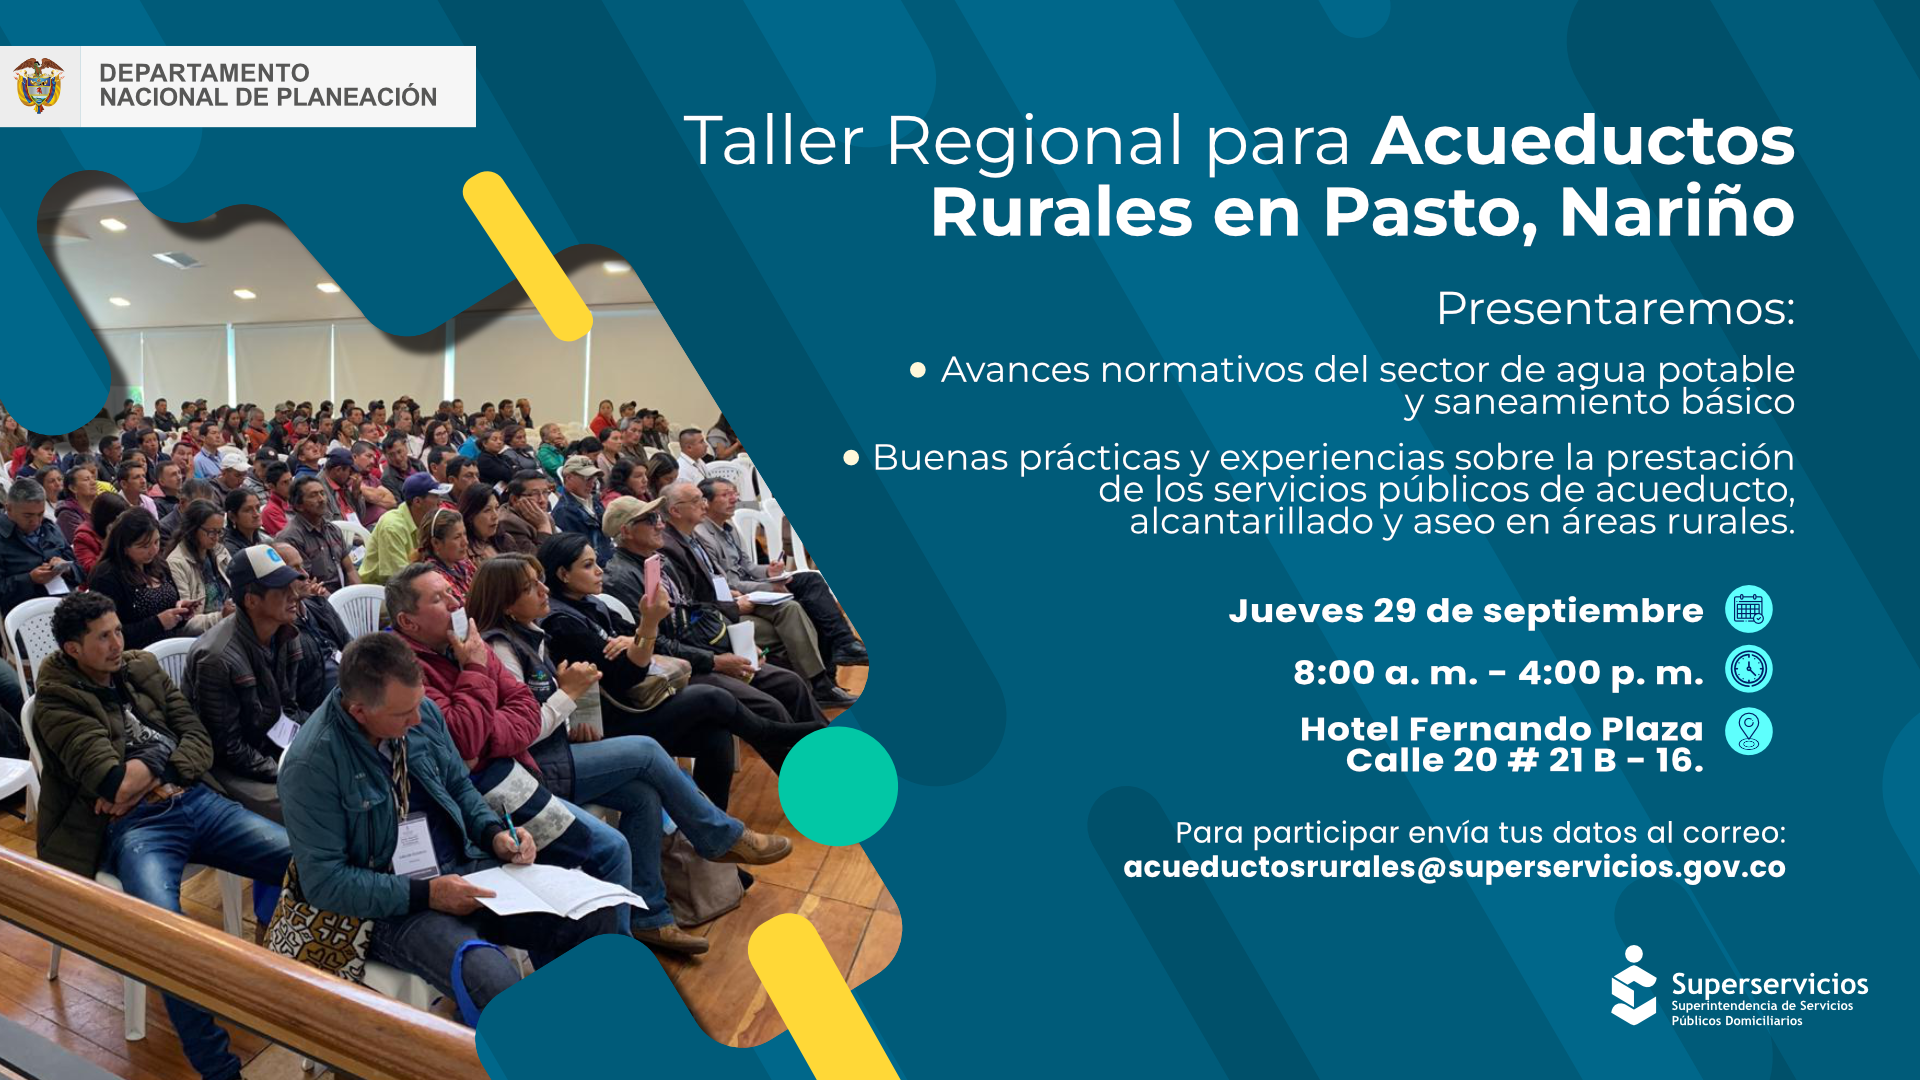 Taller Regional para Acueductos Rurales en Pasto, Nariño, donde se trataran los avances normativos del sector de agua potable y saneamiento básico
